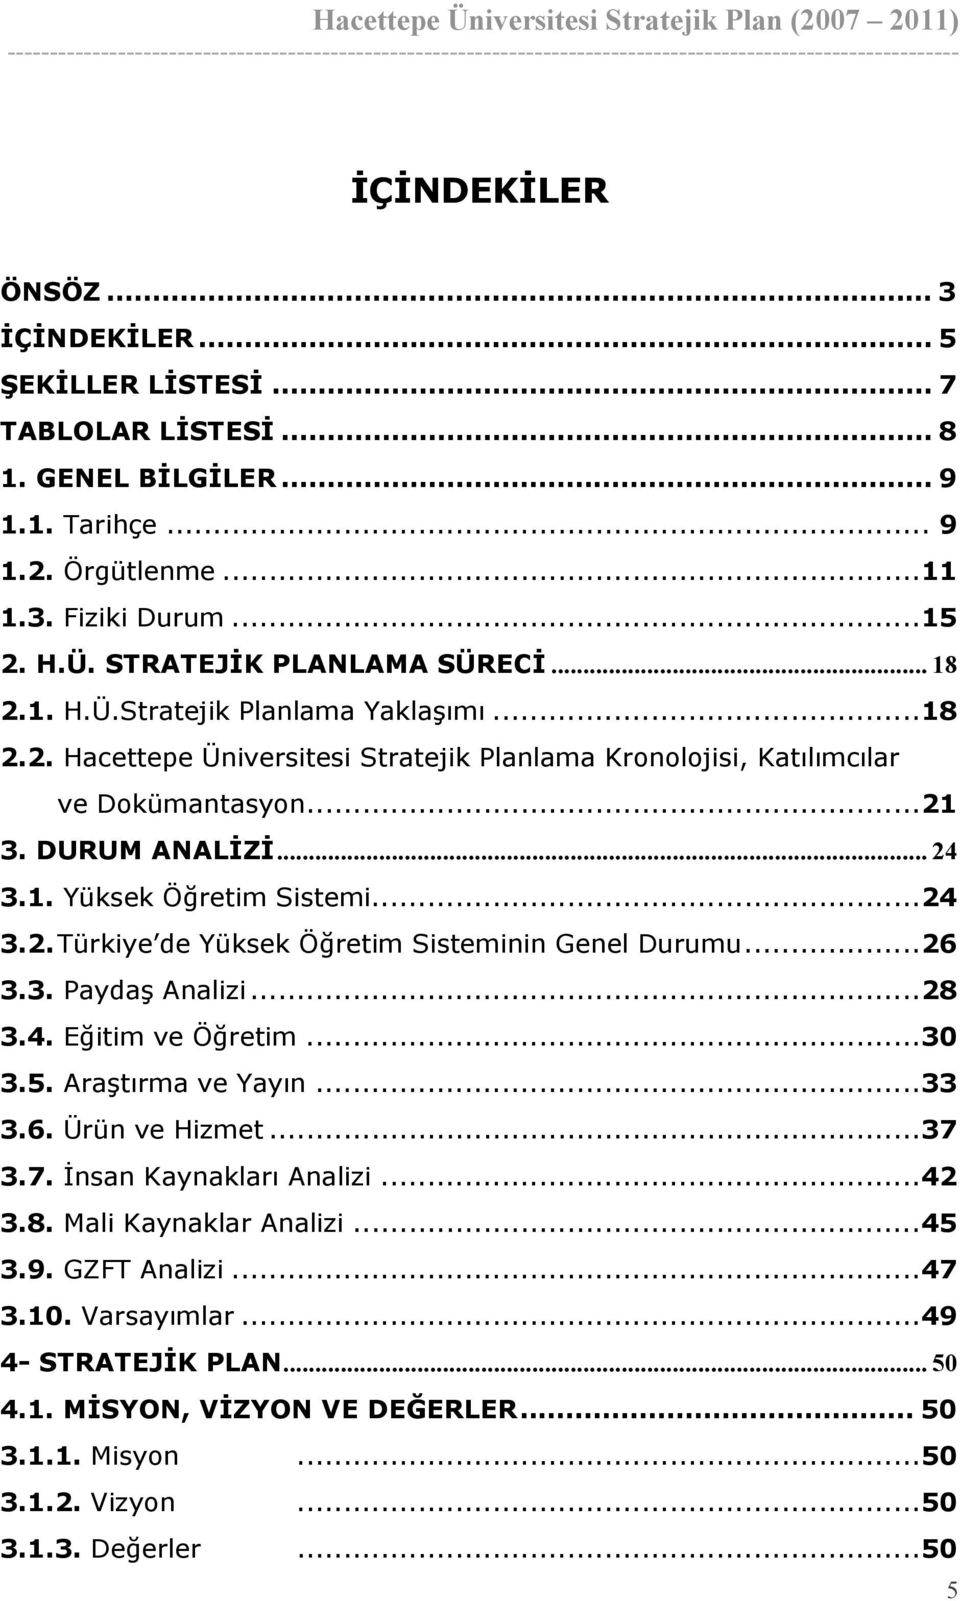 ..24 3.2. Türkiye de Yüksek Öğretim Sisteminin Genel Durumu...26 3.3. Paydaş Analizi...28 3.4. Eğitim ve Öğretim...30 3.5. Araştırma ve Yayın...33 3.6. Ürün ve Hizmet...37 3.7. İnsan Kaynakları Analizi.